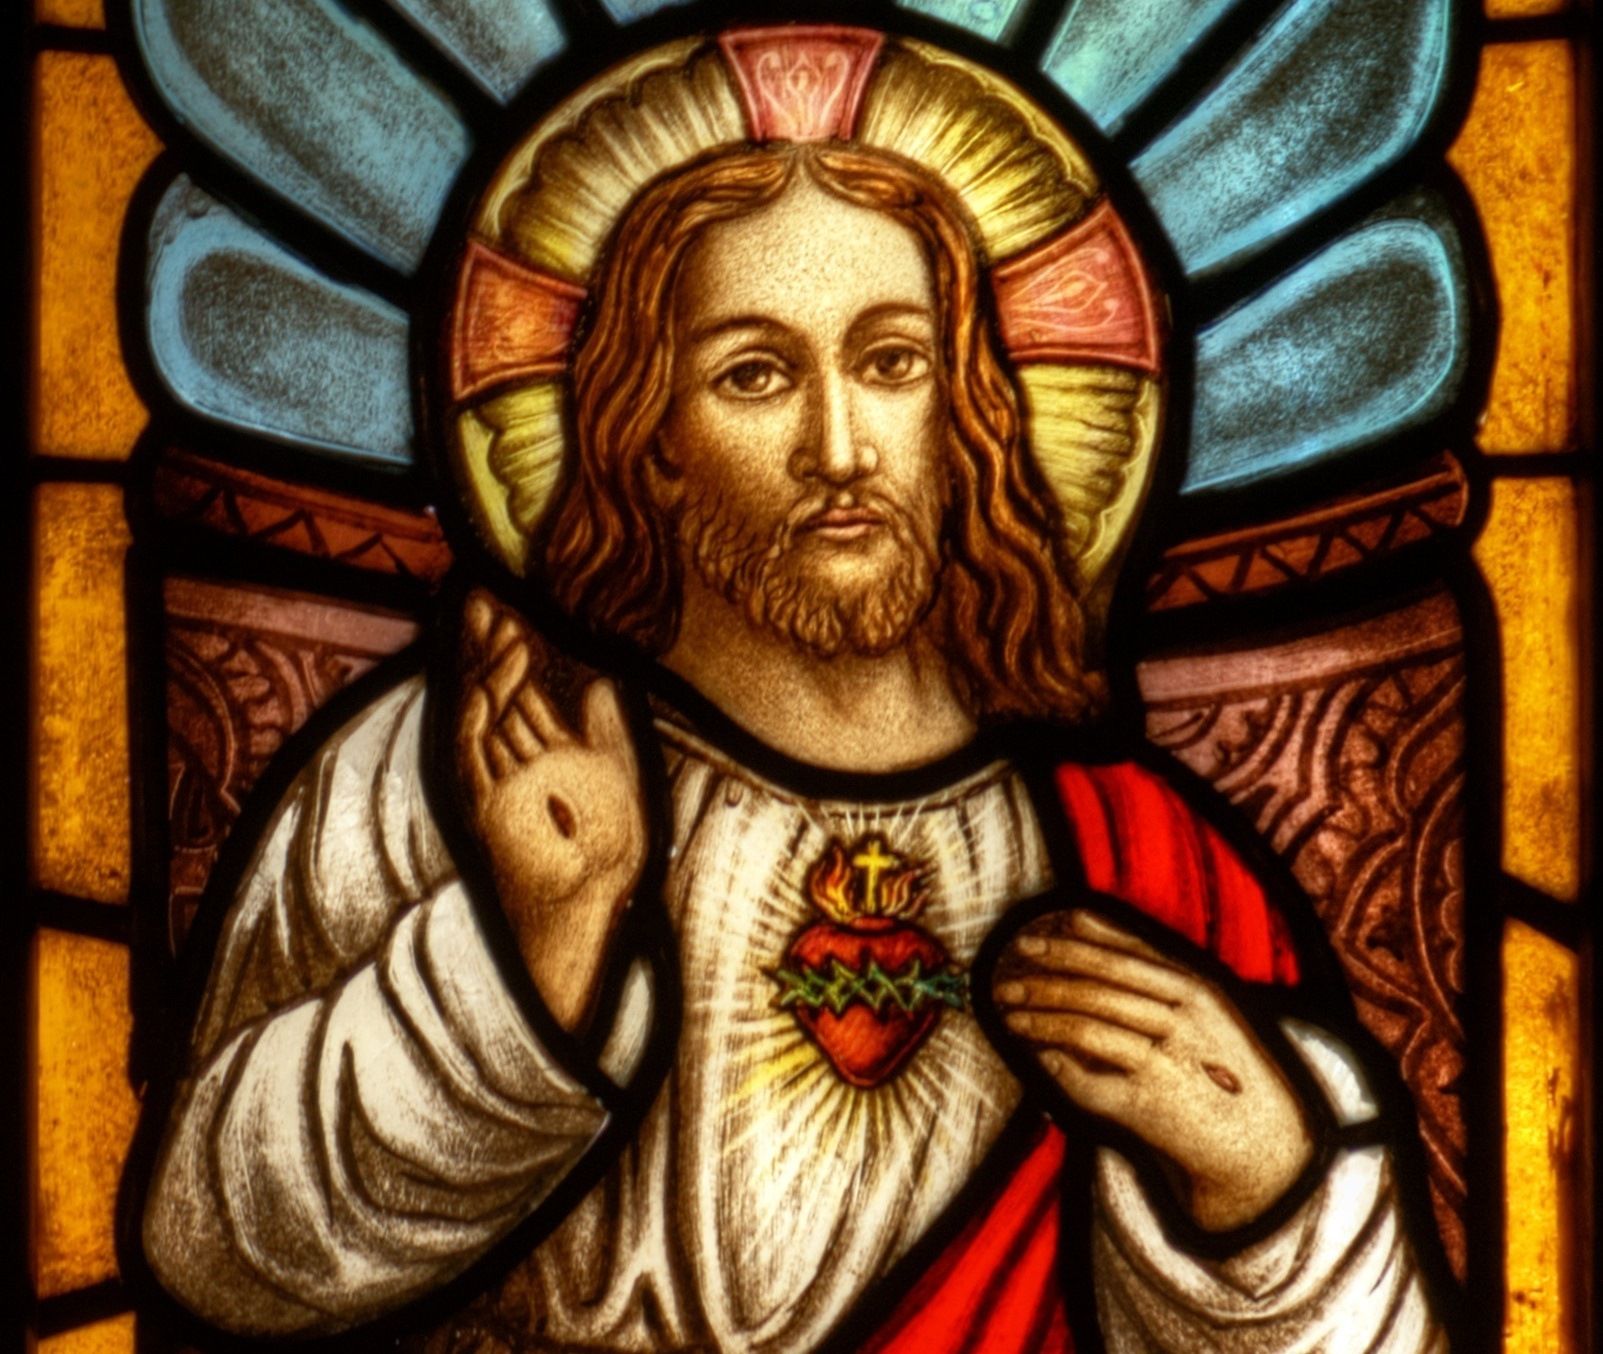 Resultado de imagem para vitrais jesus